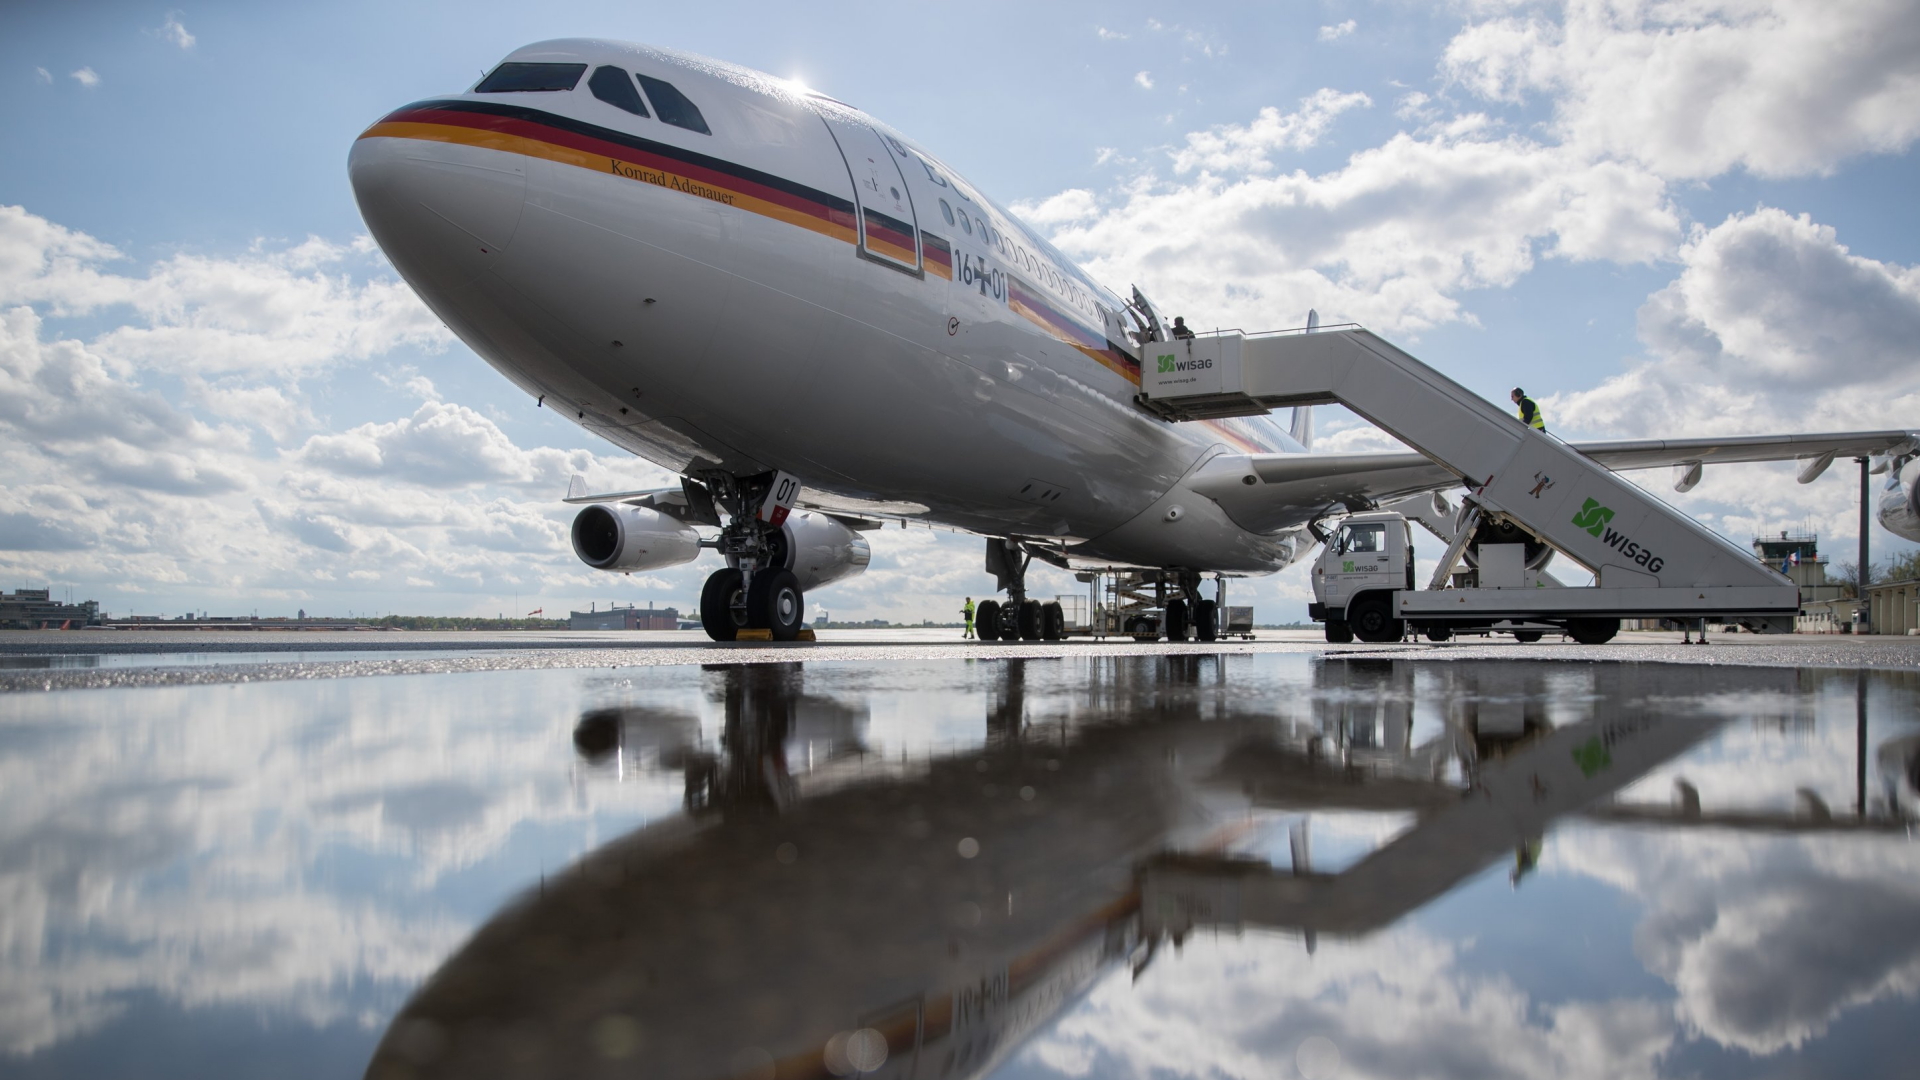 Das Regierungsflugzeug "Konrad Adenauer" steht auf dem Flughafen Berlin-Tegel | dpa